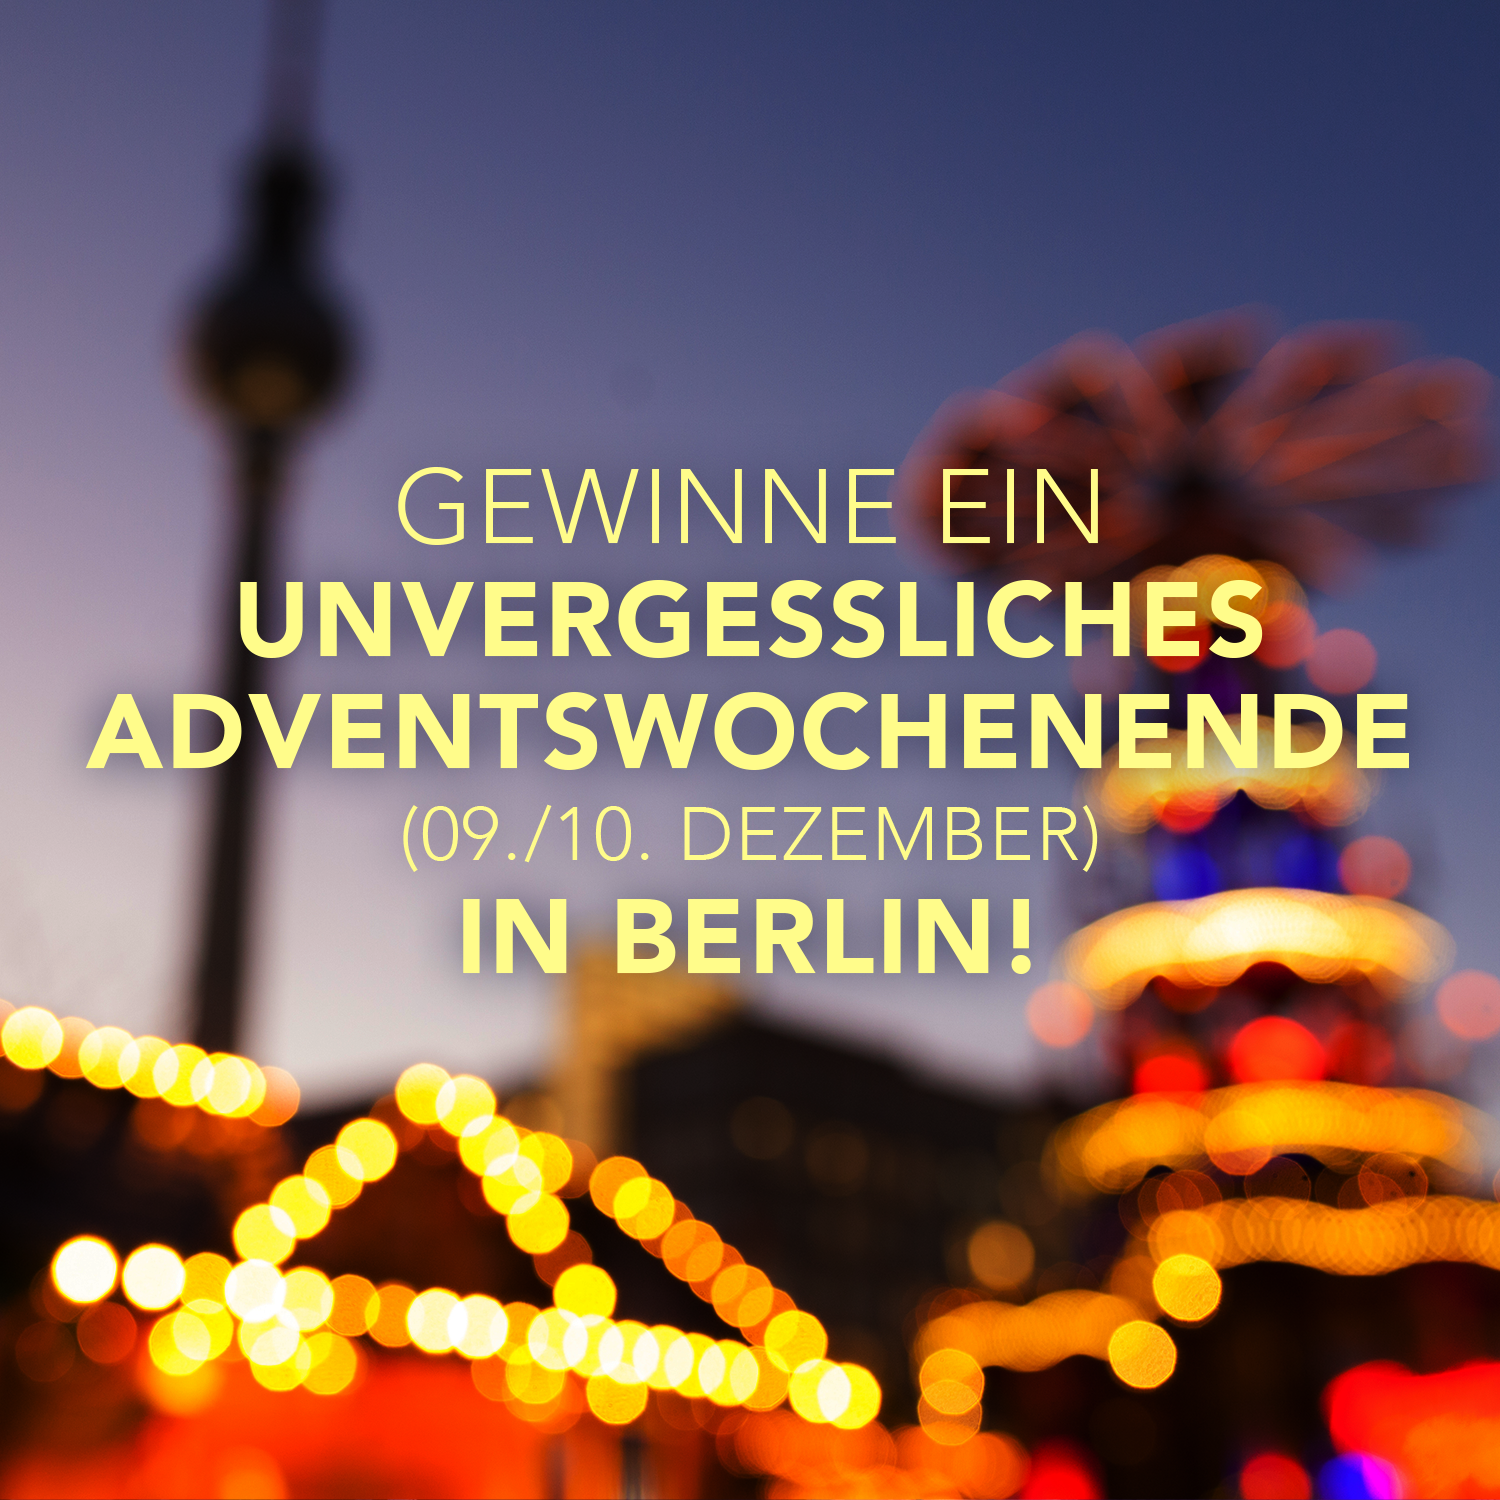 Unvergessliches Adventswochenende in Berlin zu gewinnen